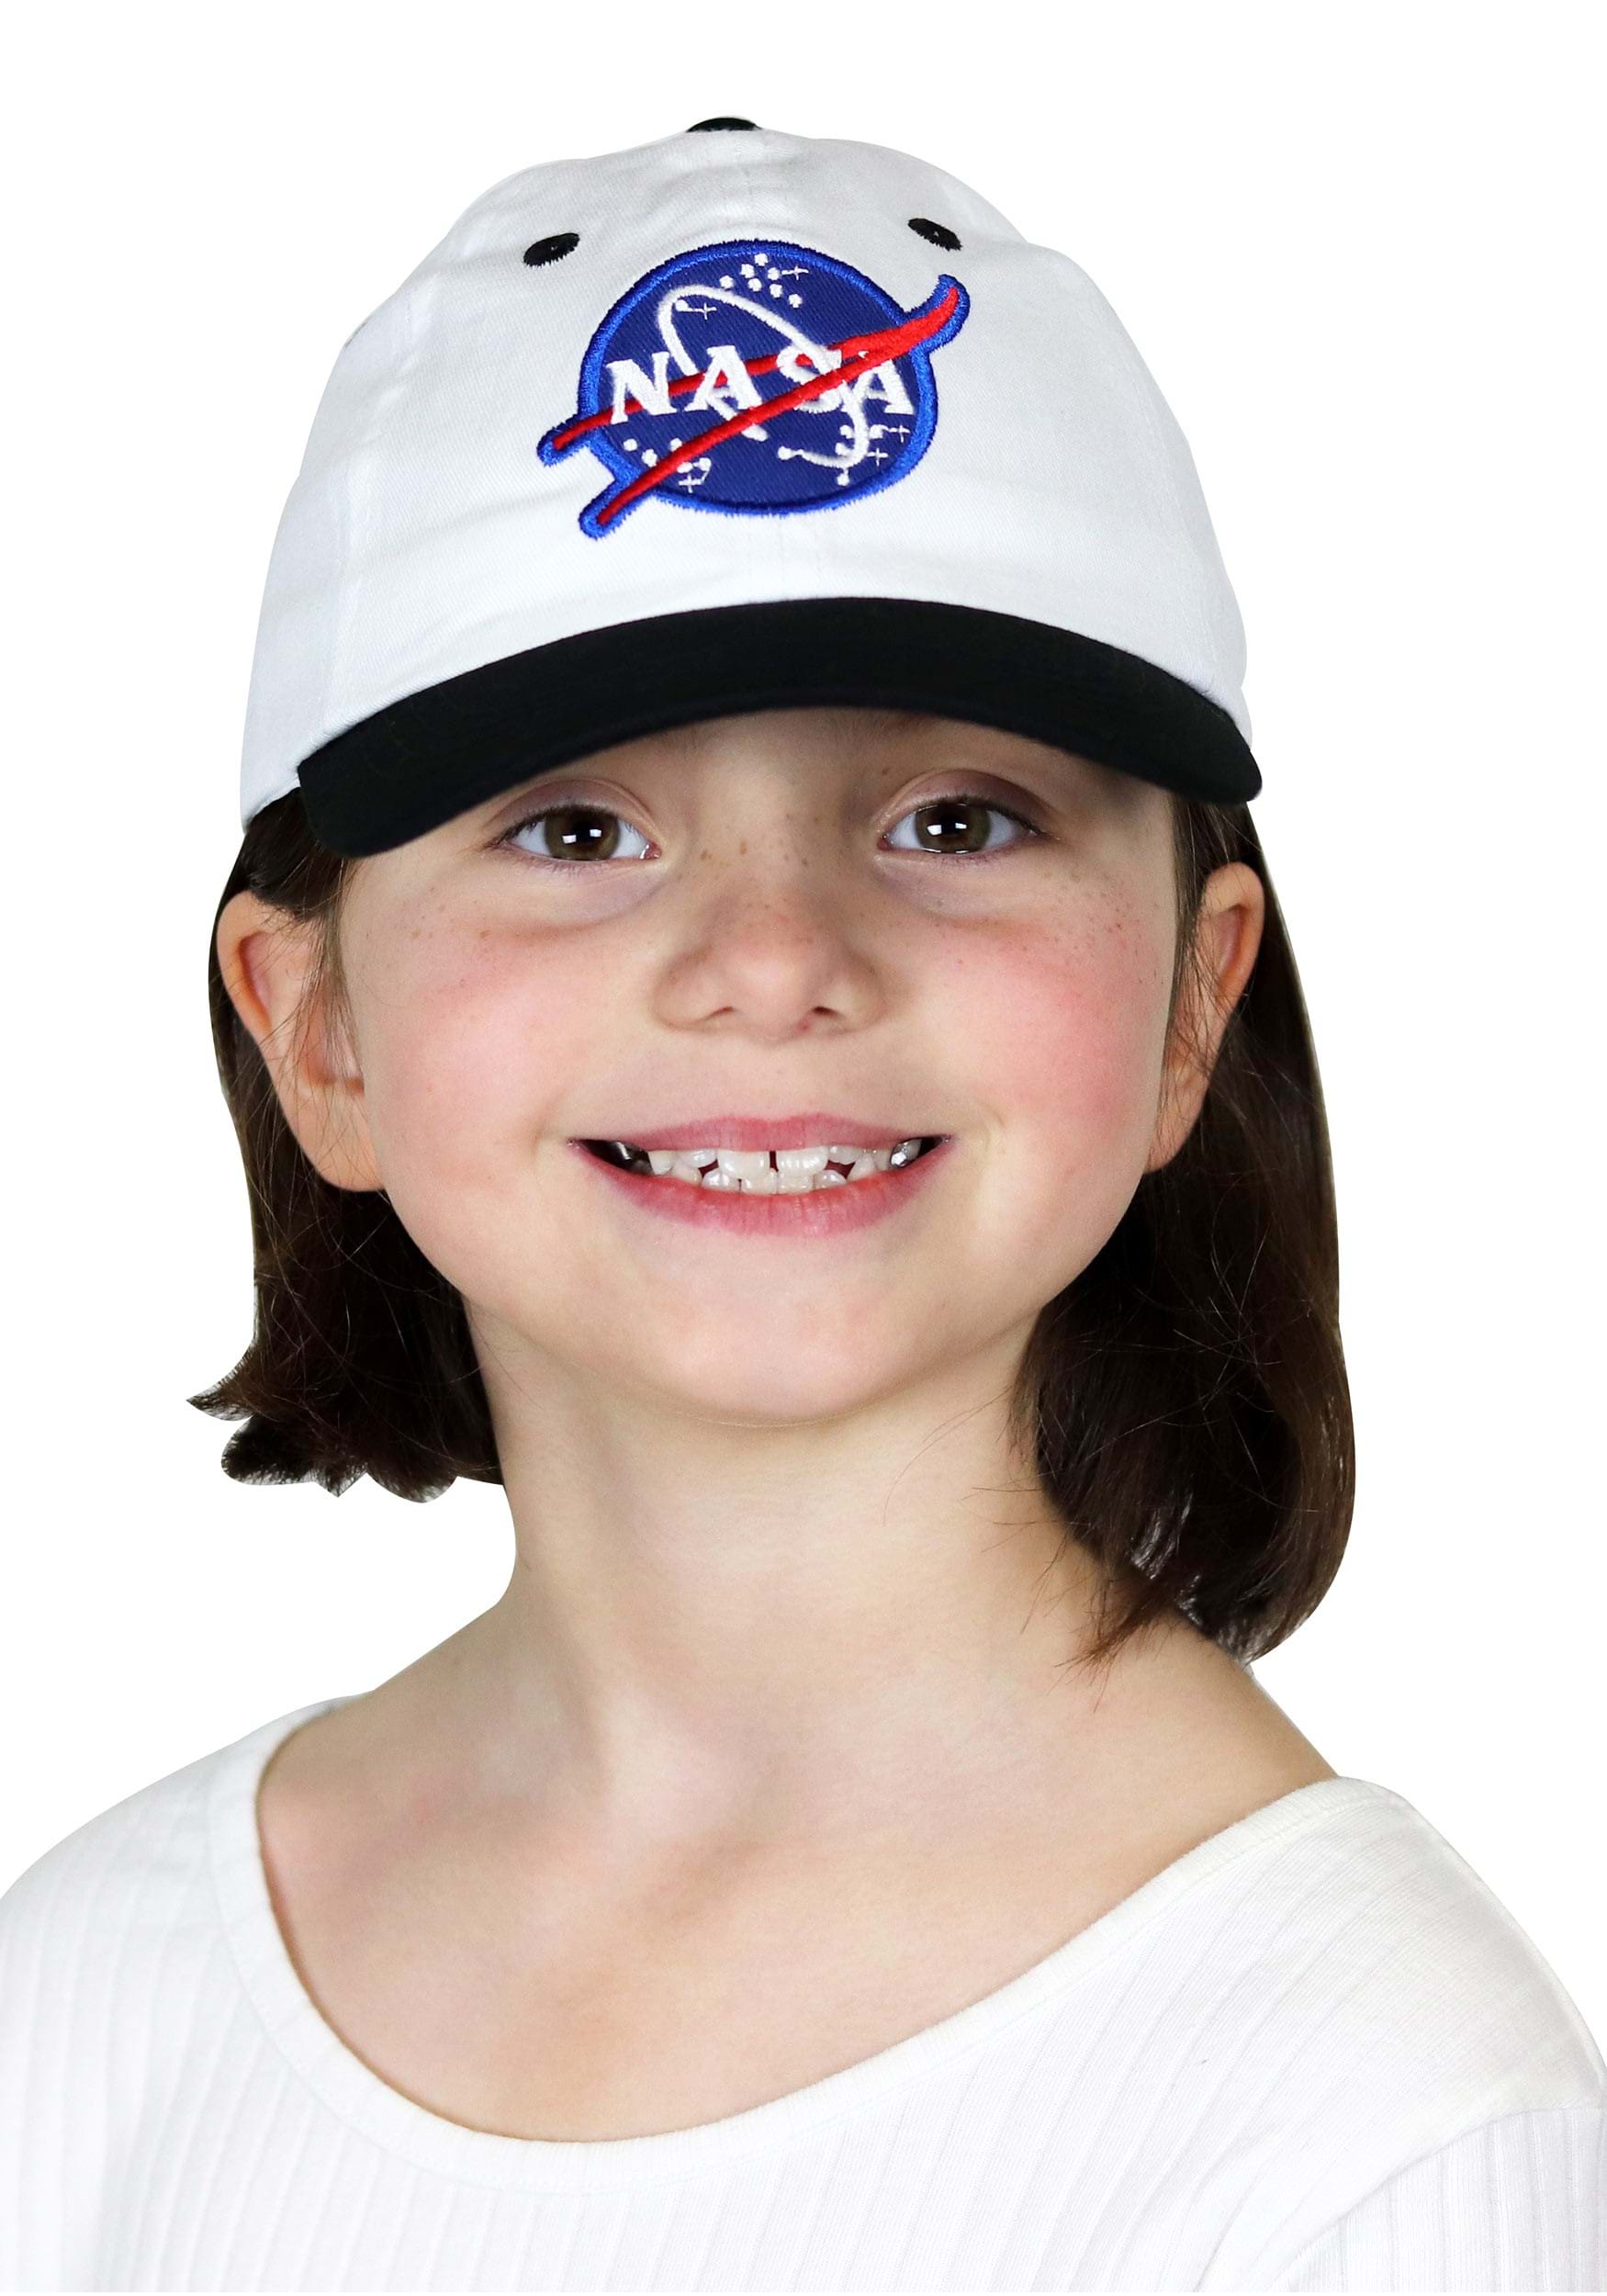 Gorra de astronauta blanca para niños Multicolor Colombia